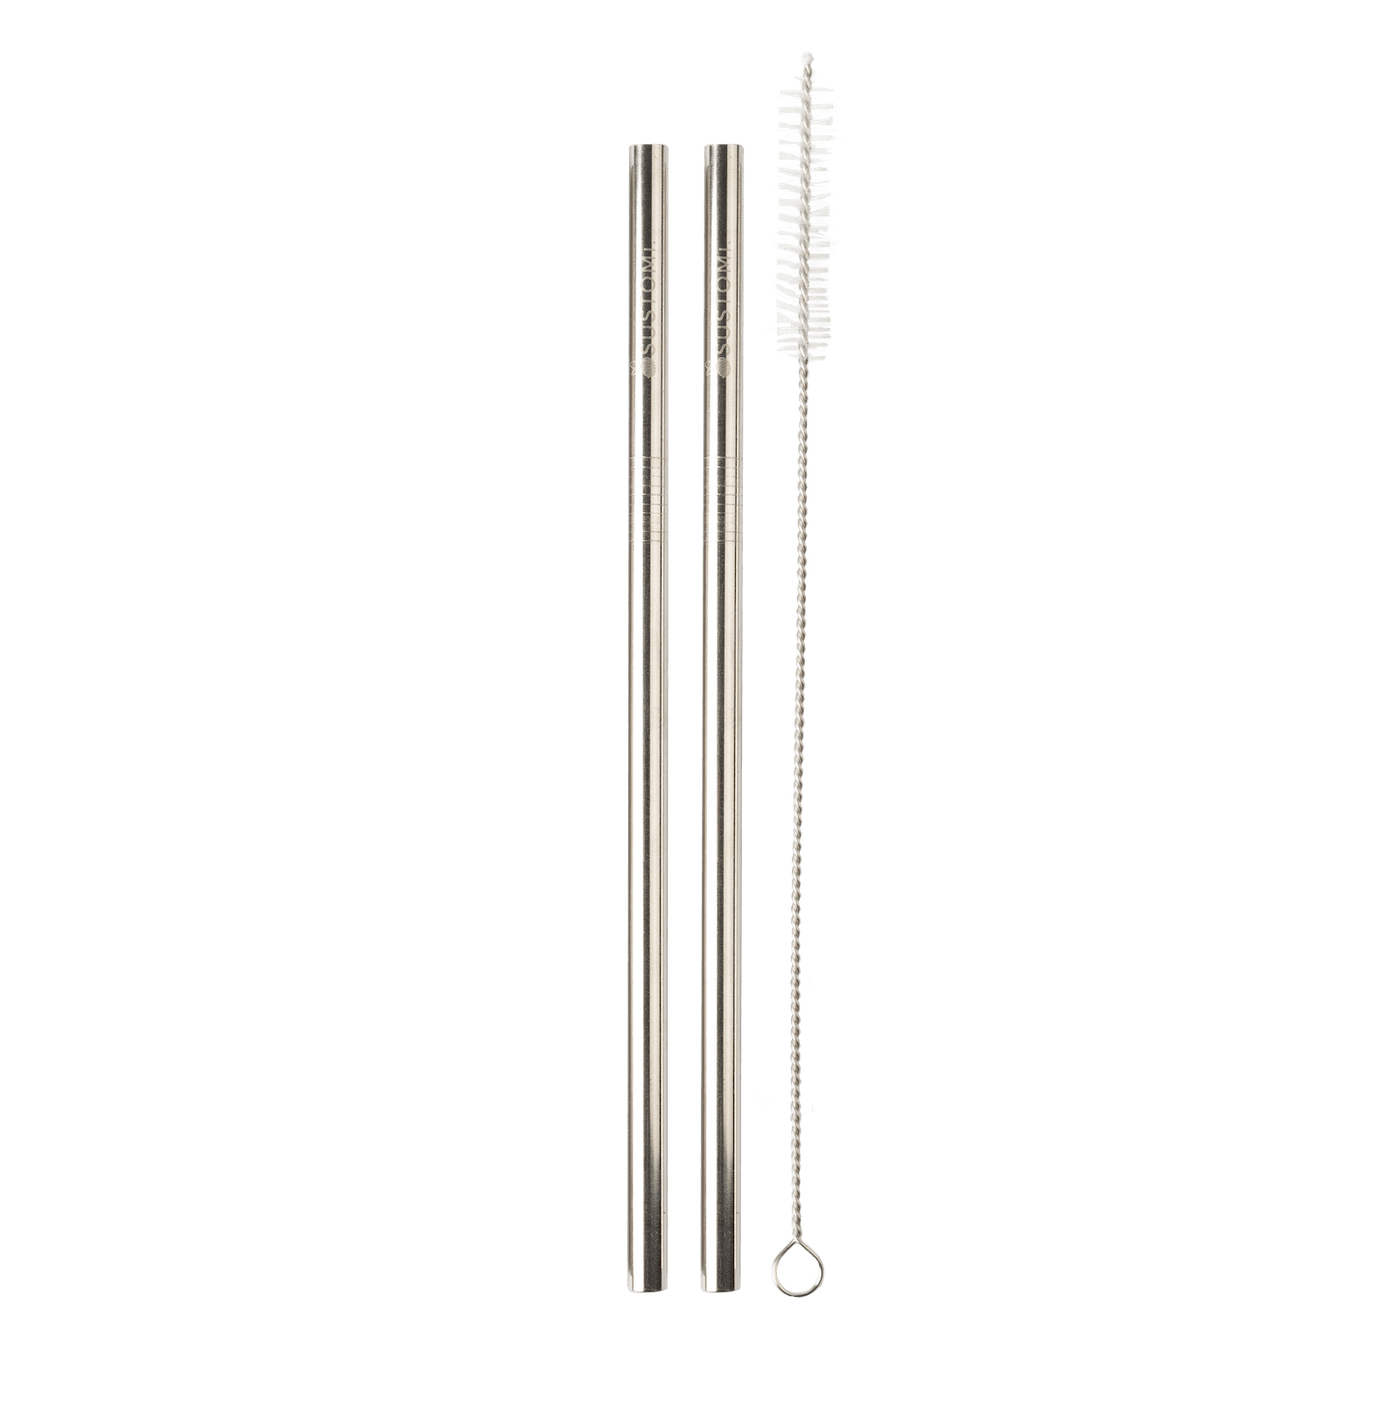 Metal Straws - 2pk